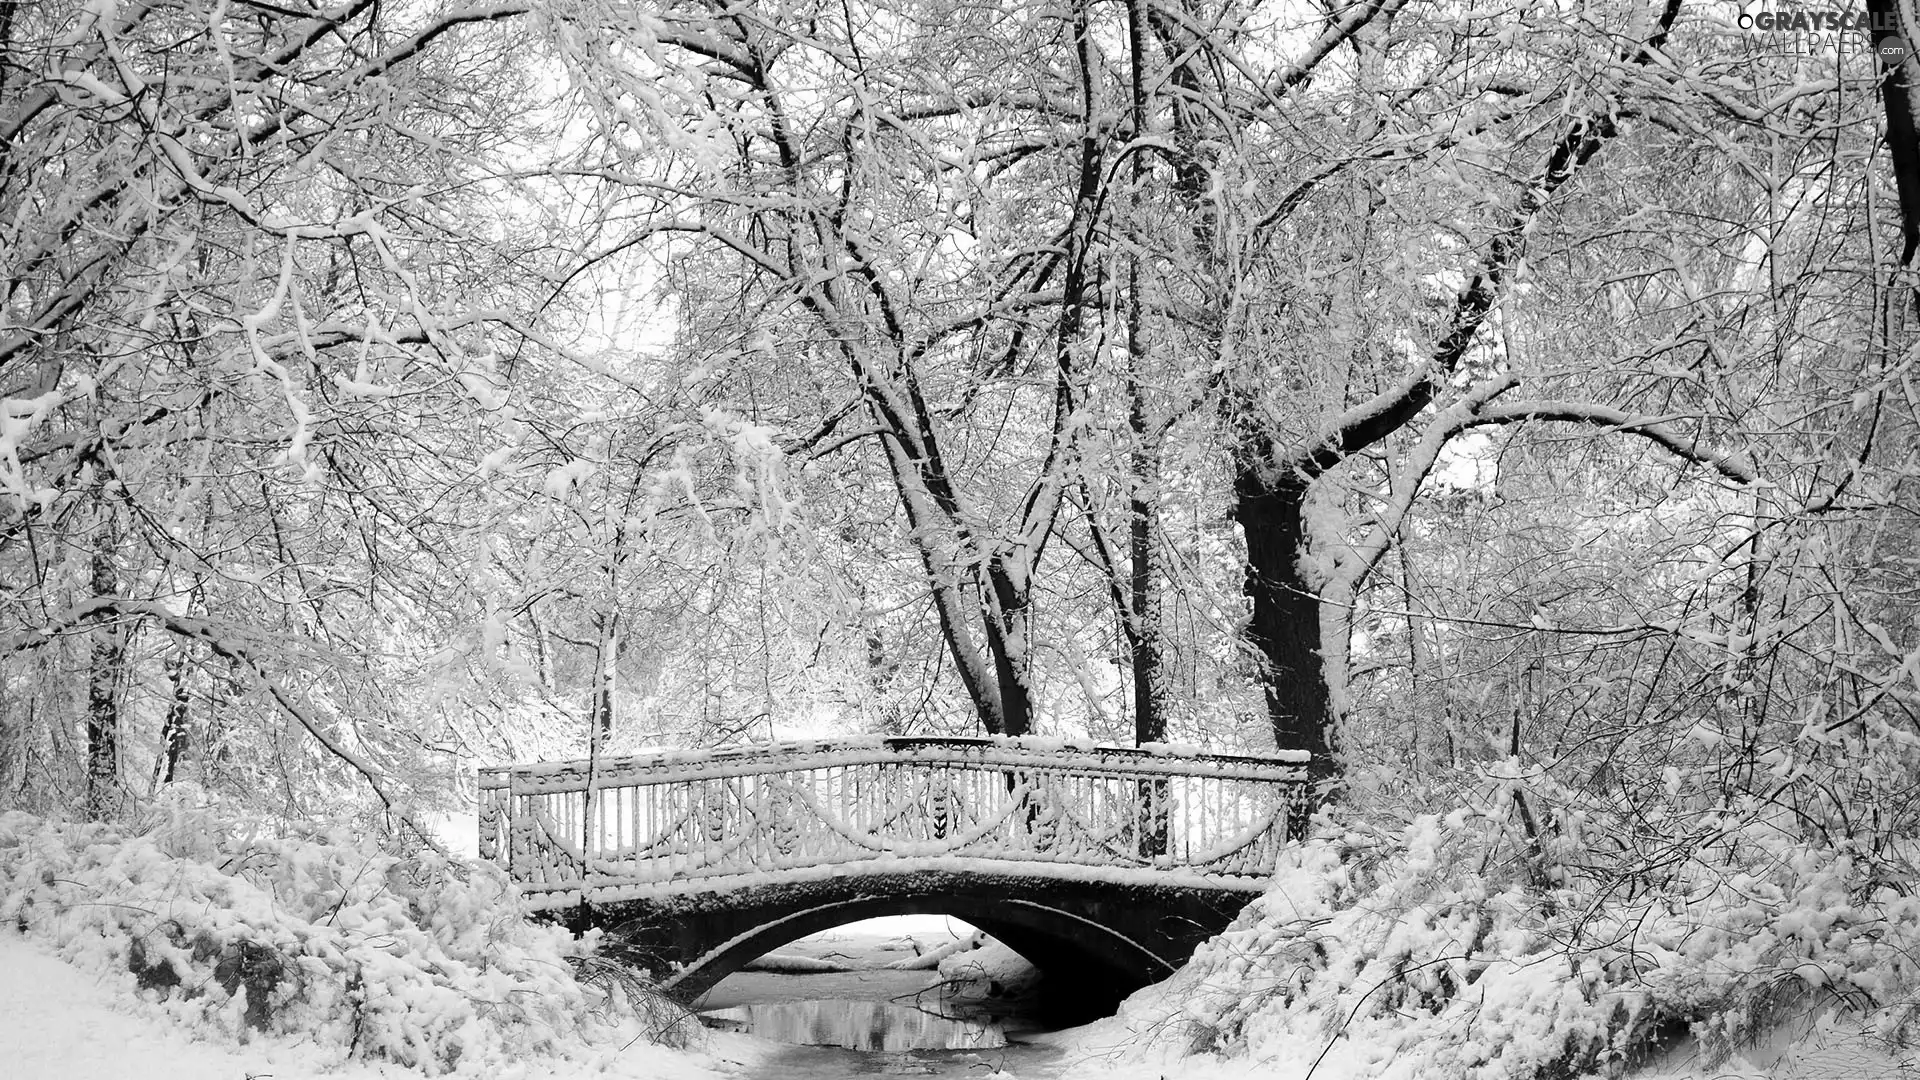 River, Park, winter, bridges